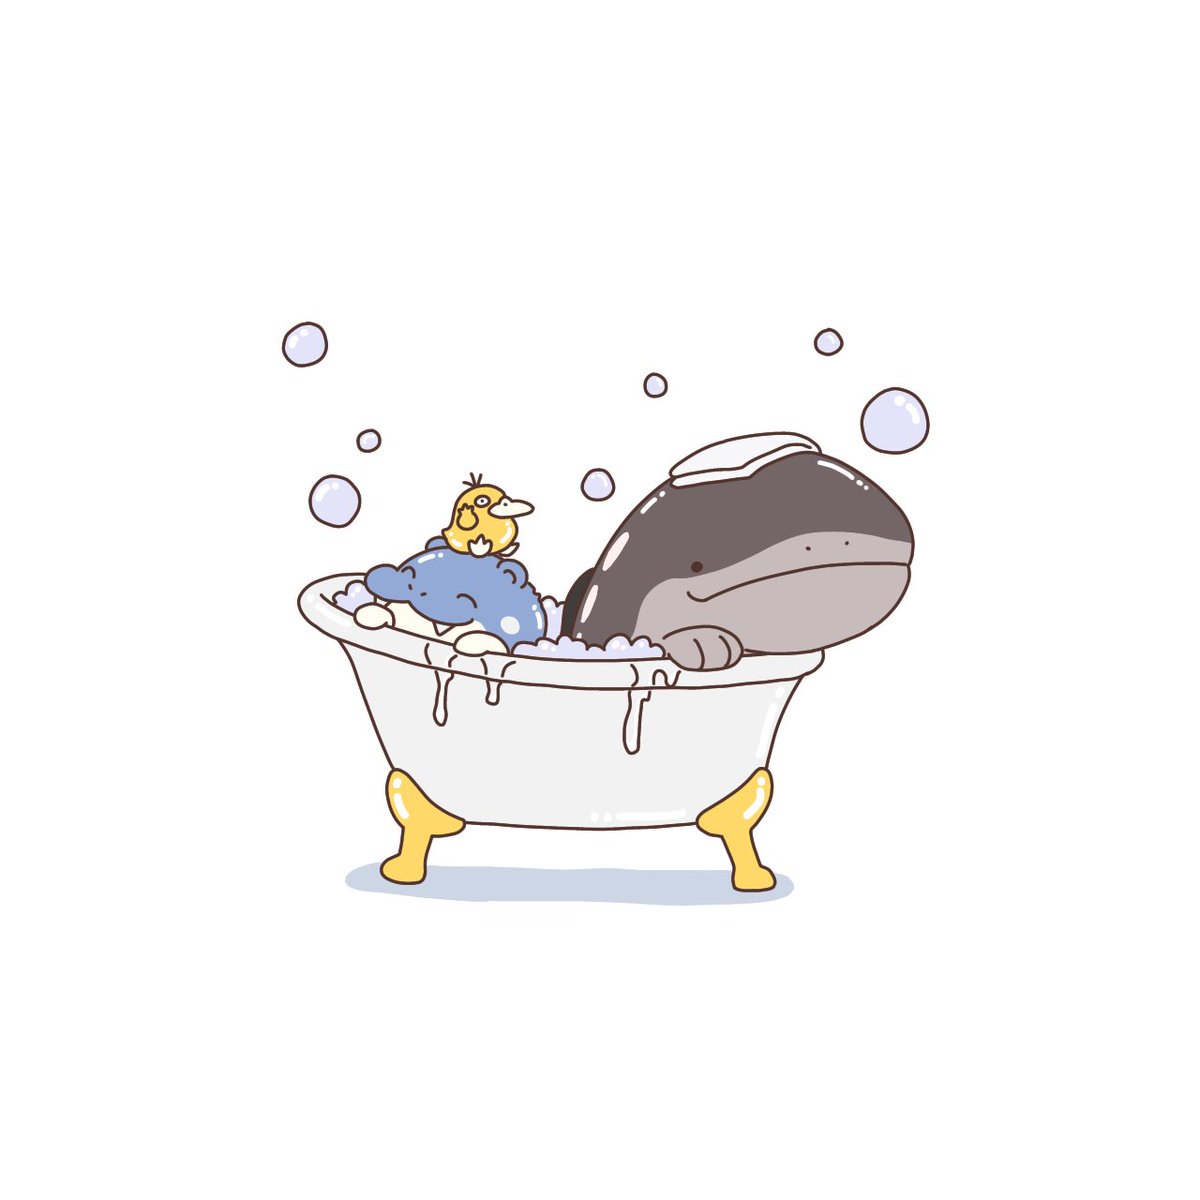 「いい風呂の日!」|シパソのイラスト